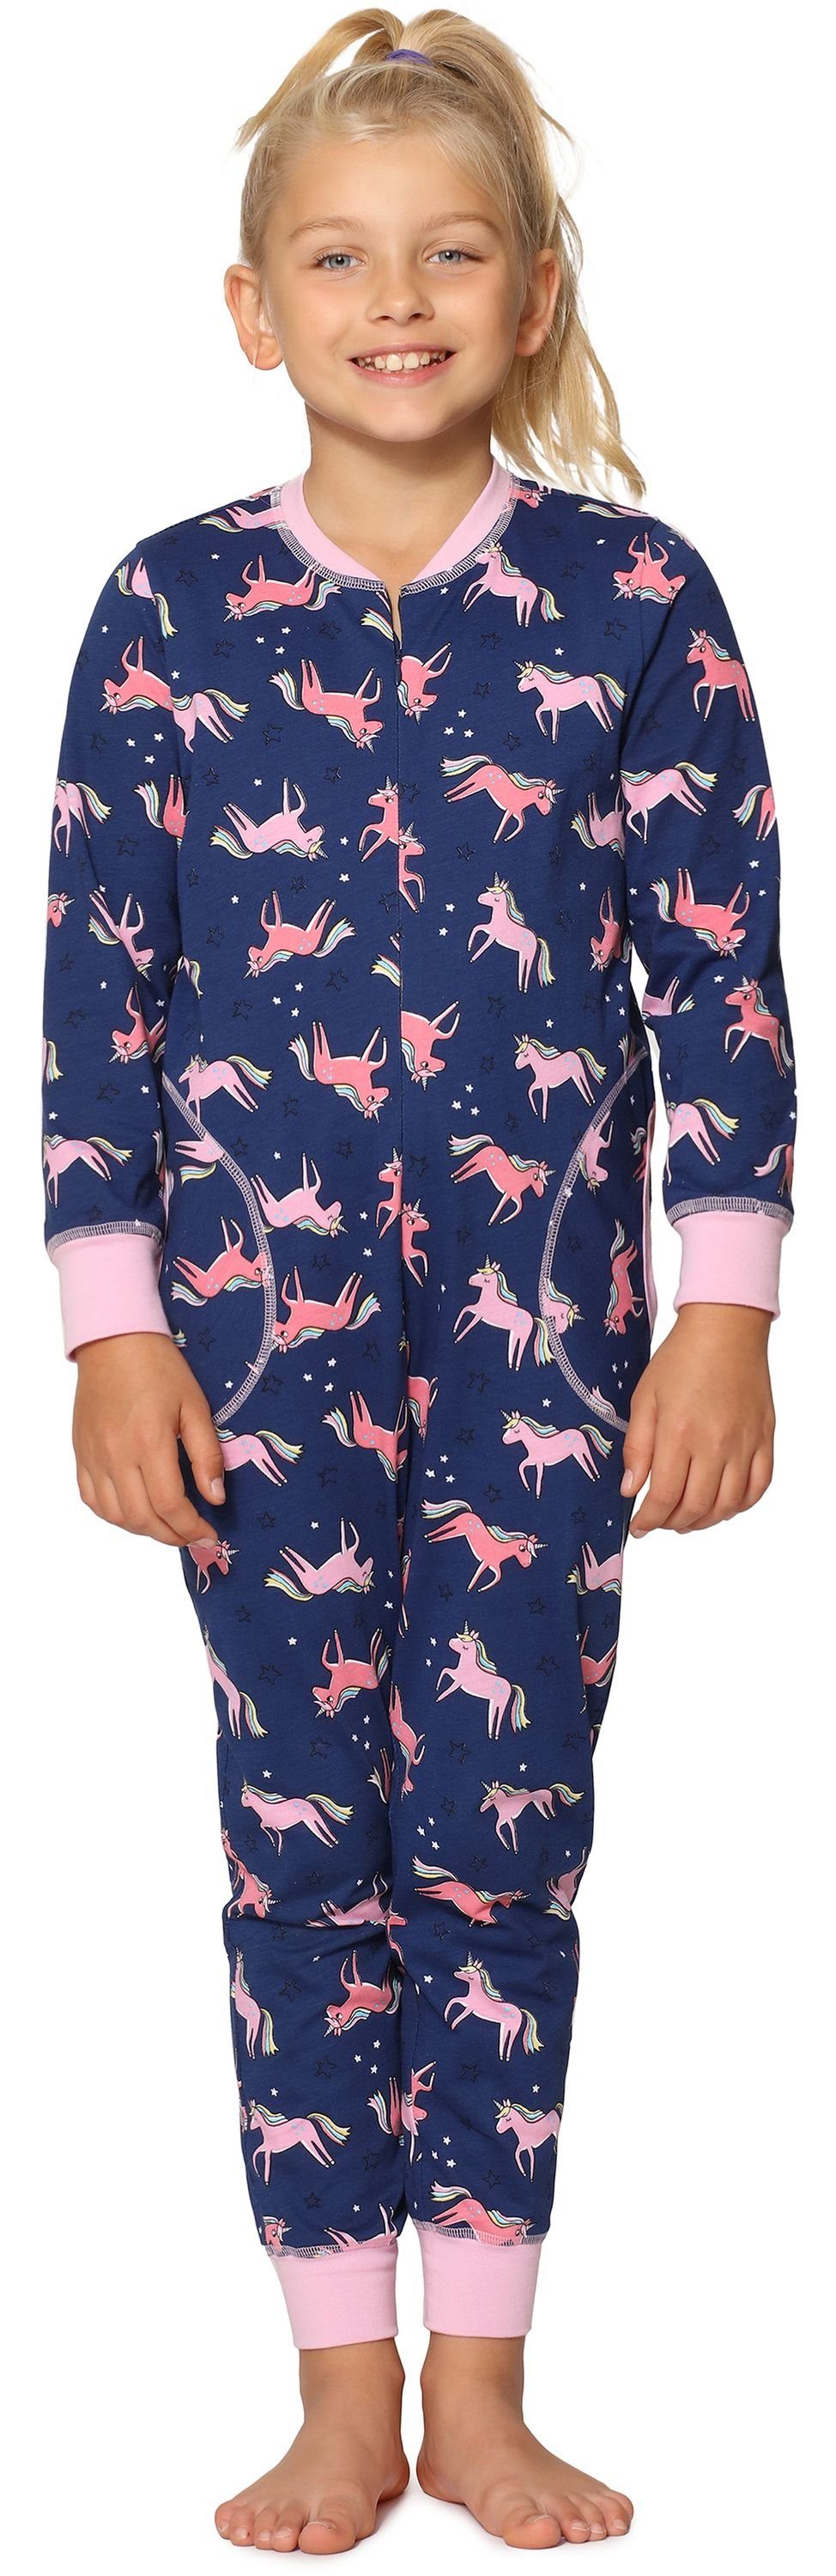 Merry Style Schlafanzug Mädchen Schlafanzug Jumpsuit MS10-186 Marineblau Einhorn